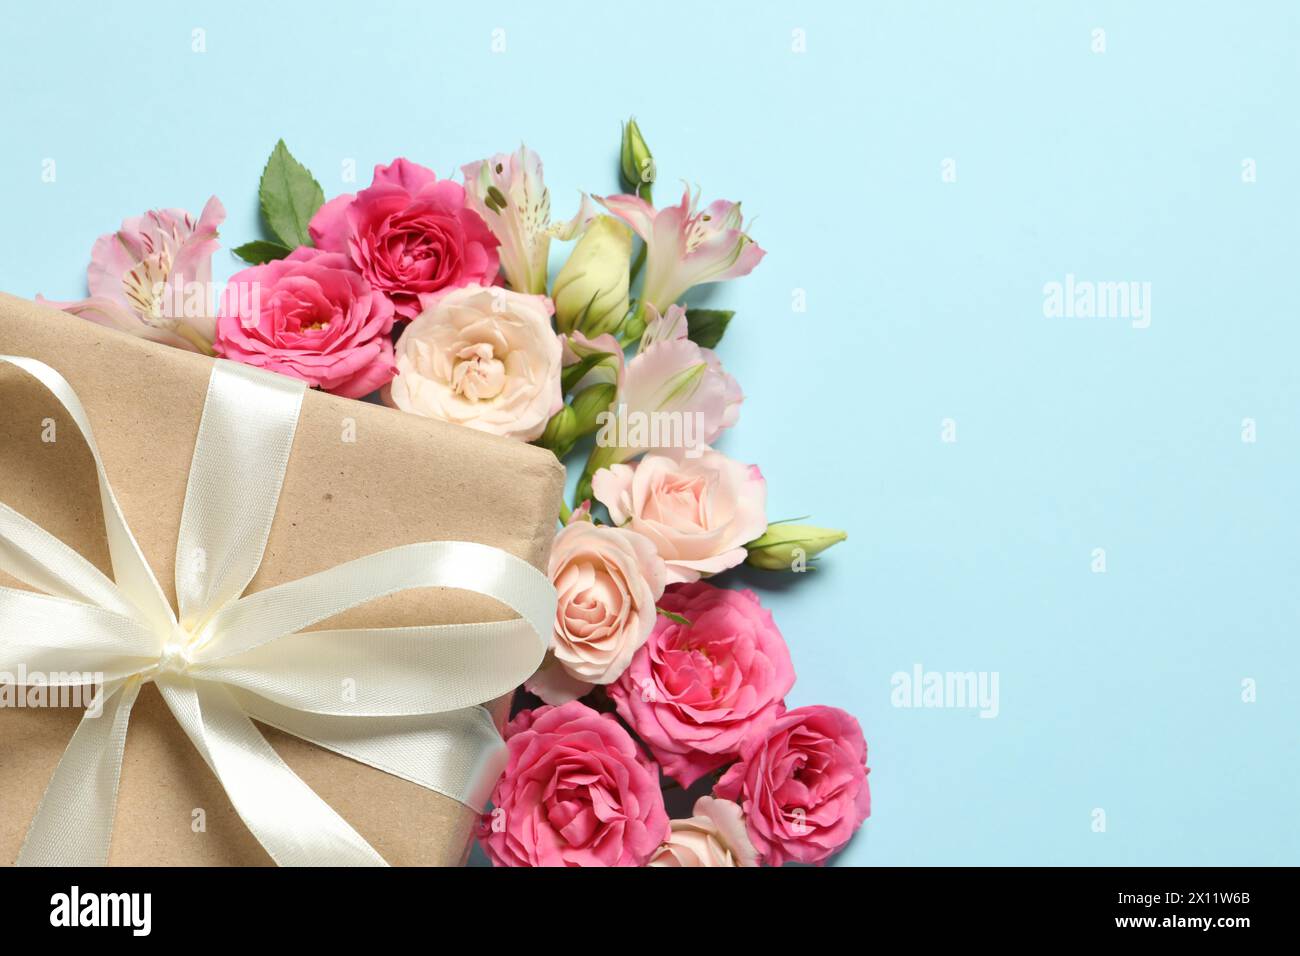 Bonne fête des mères. Belles fleurs et boîte-cadeau sur fond bleu clair, plat. Espace pour le texte Banque D'Images